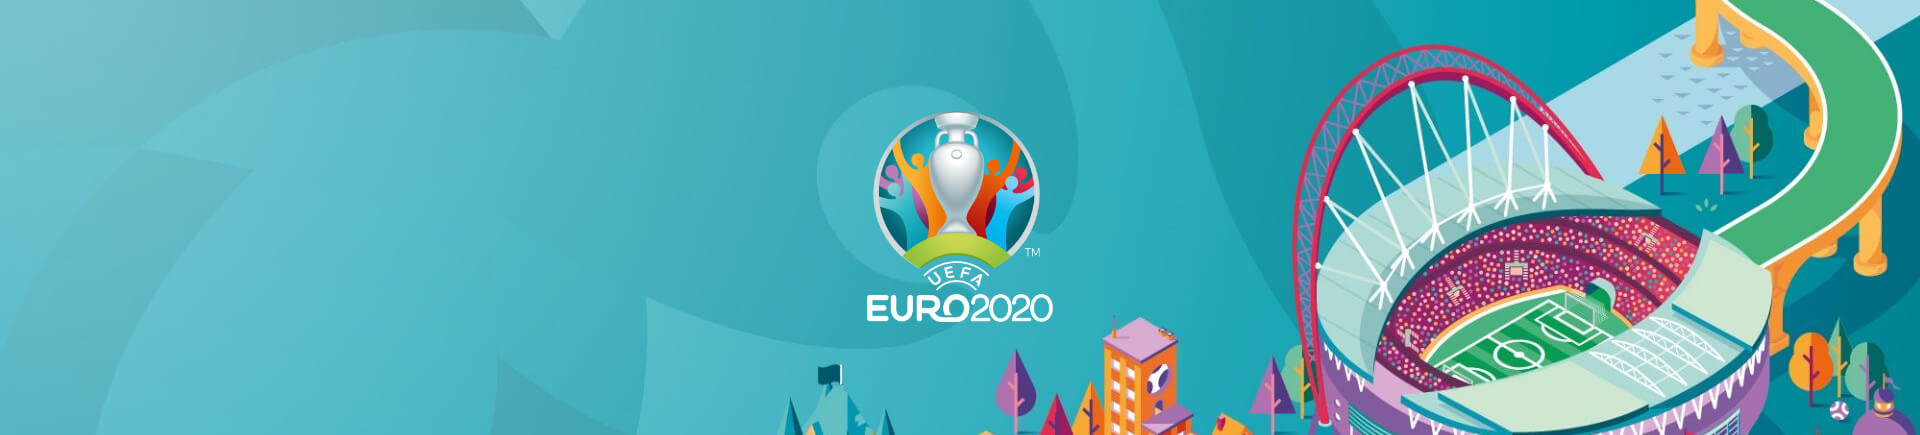 uefaeuro-2020 - bestsoccerstore